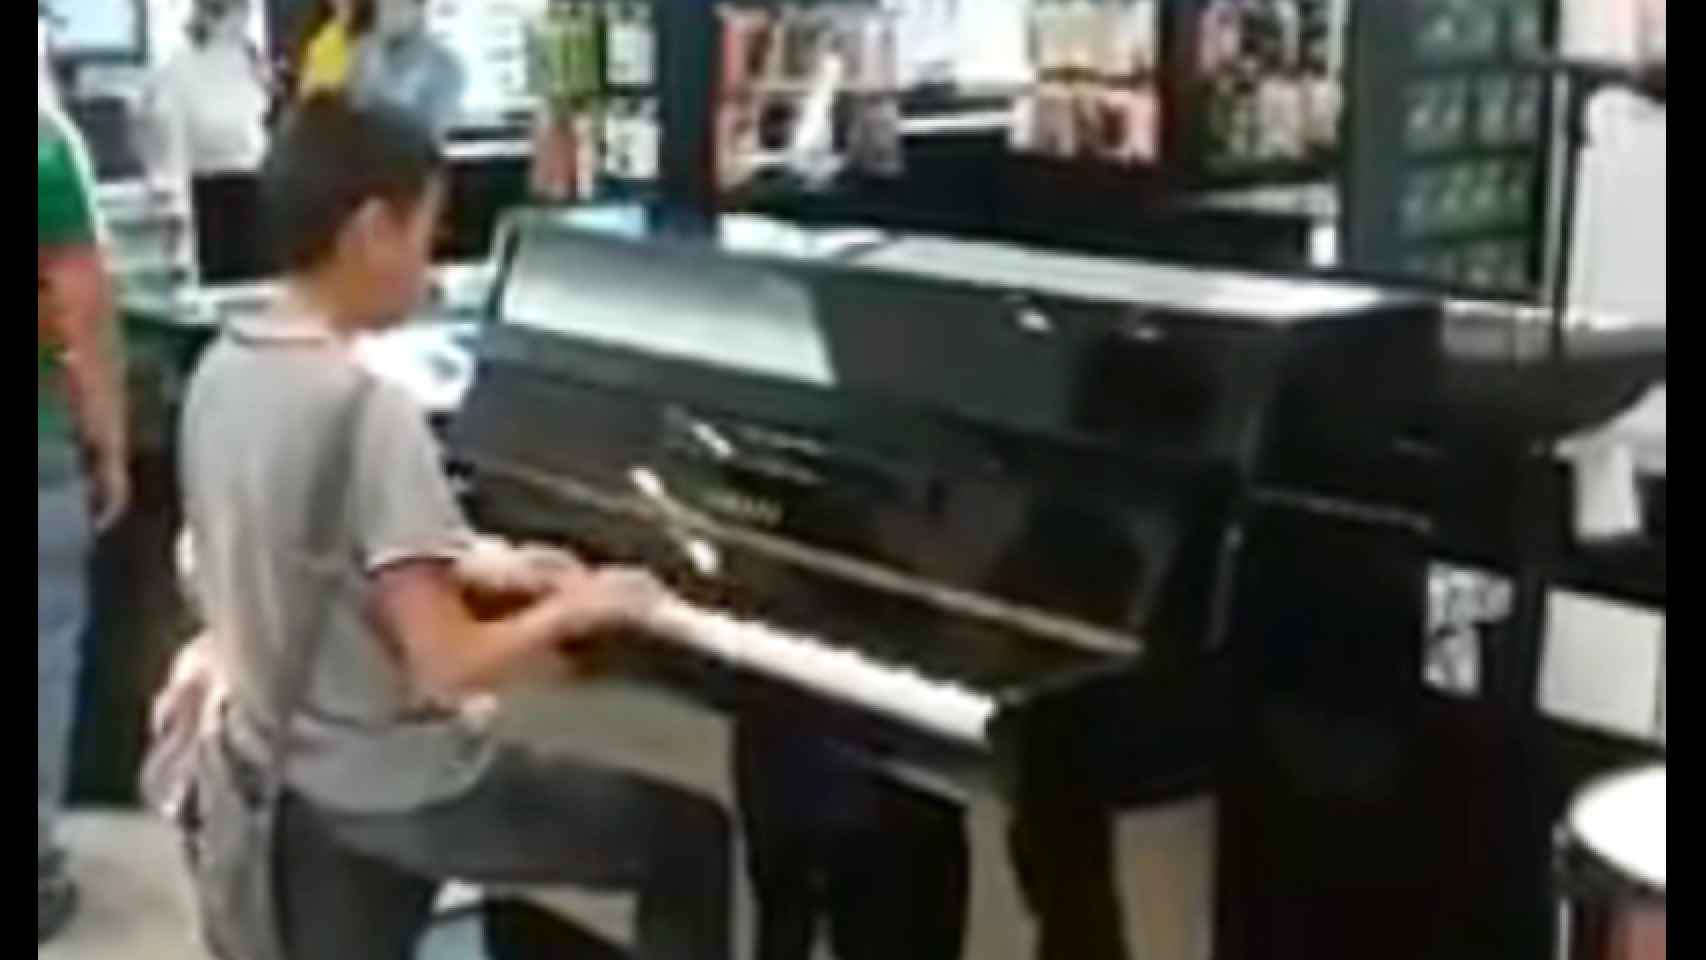 Gael tocando el piano